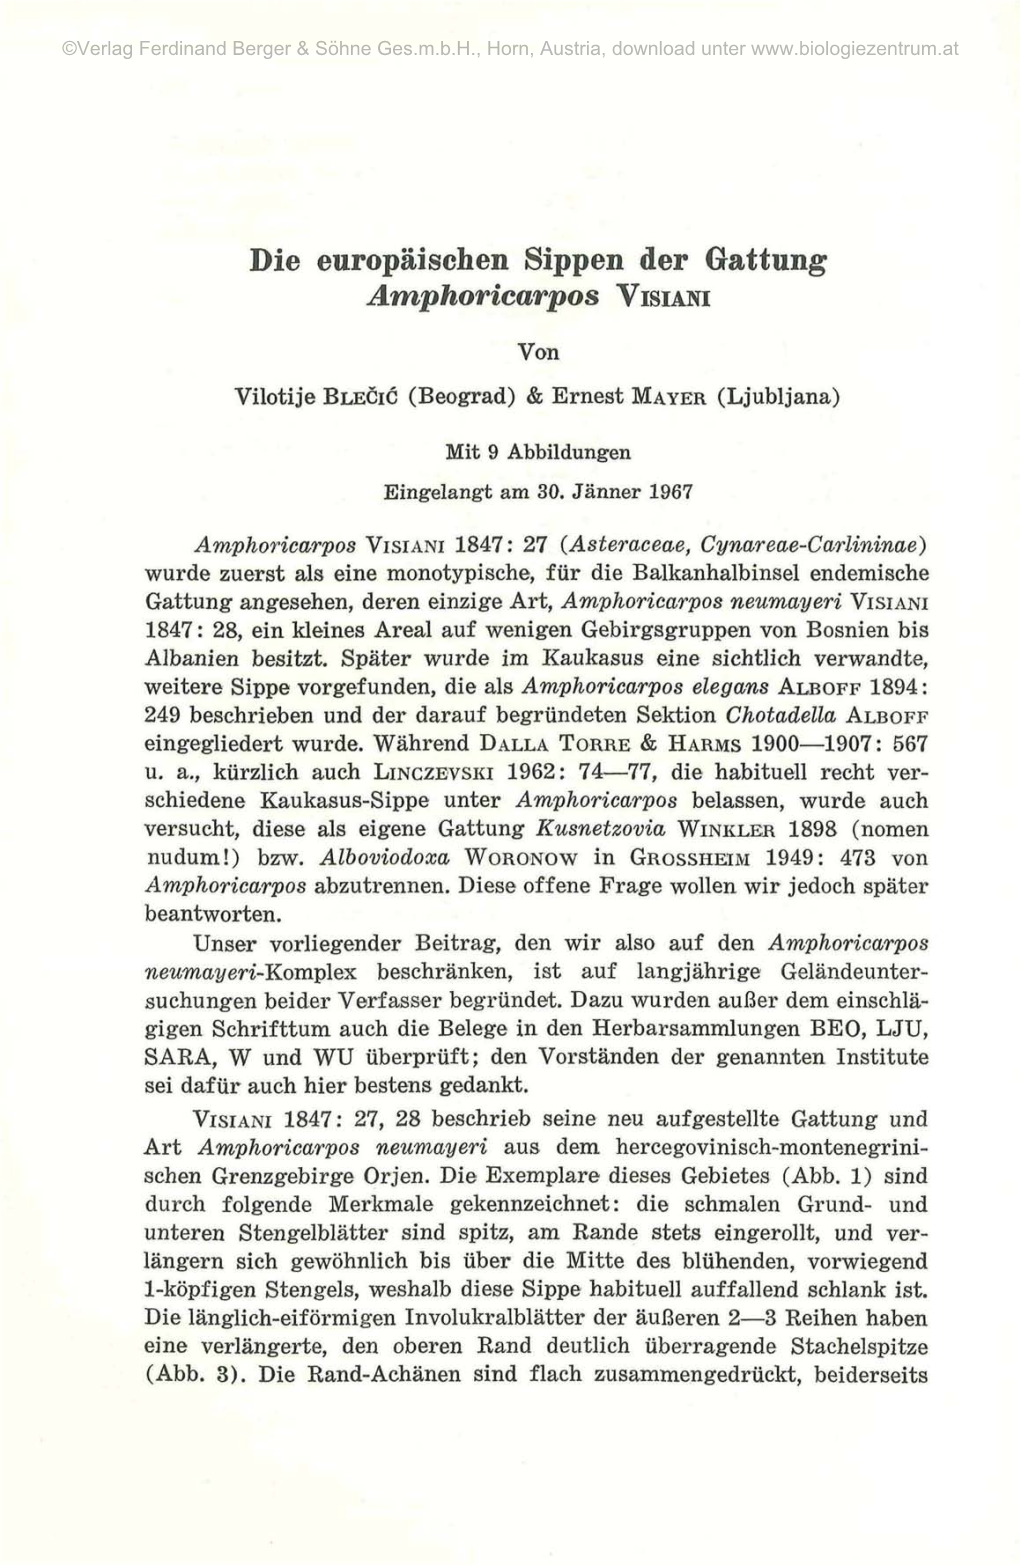 Die Europäischen Sippen Der Gattung Amphoricarpos VISIANI Von Vilotije BLECIC (Beograd) & Ernest MAYER (Ljubljana)